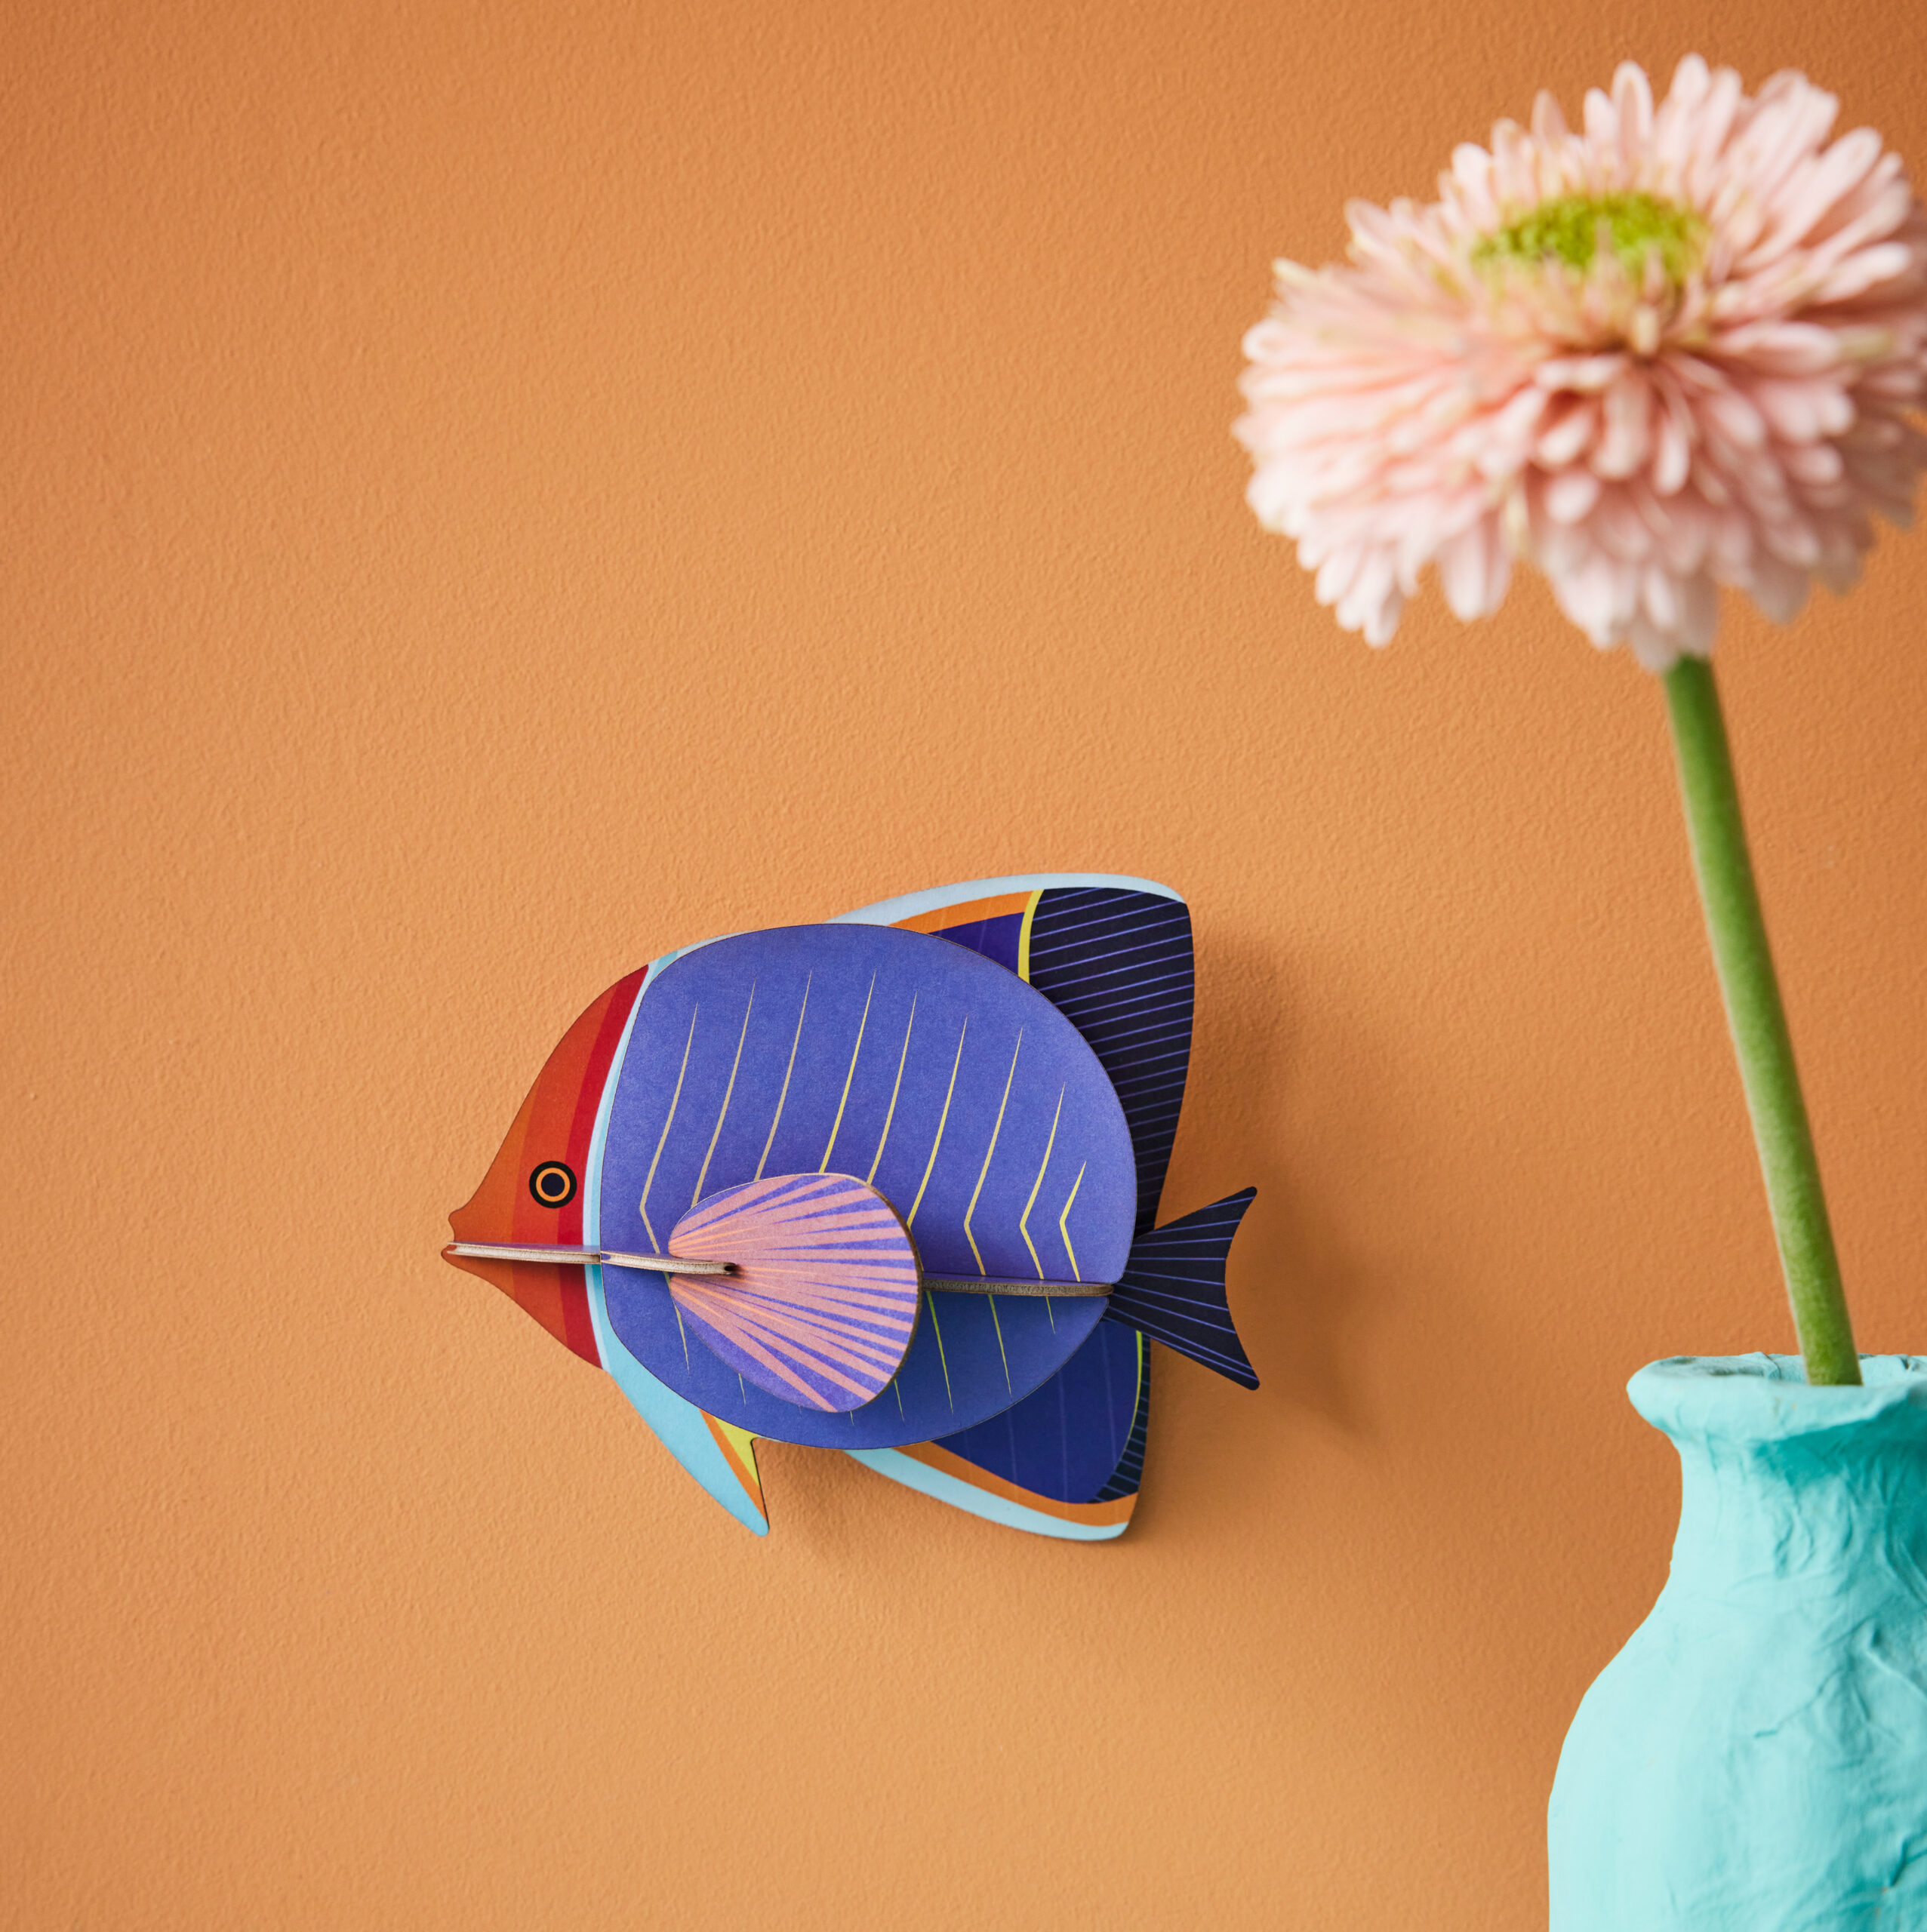 Butterfly_Fish - mehrfarbiger Faltenfisch aus Papier in 3D als Wanddekoration von der Firma studio Roof auf lachsfarbenem Hintergrund